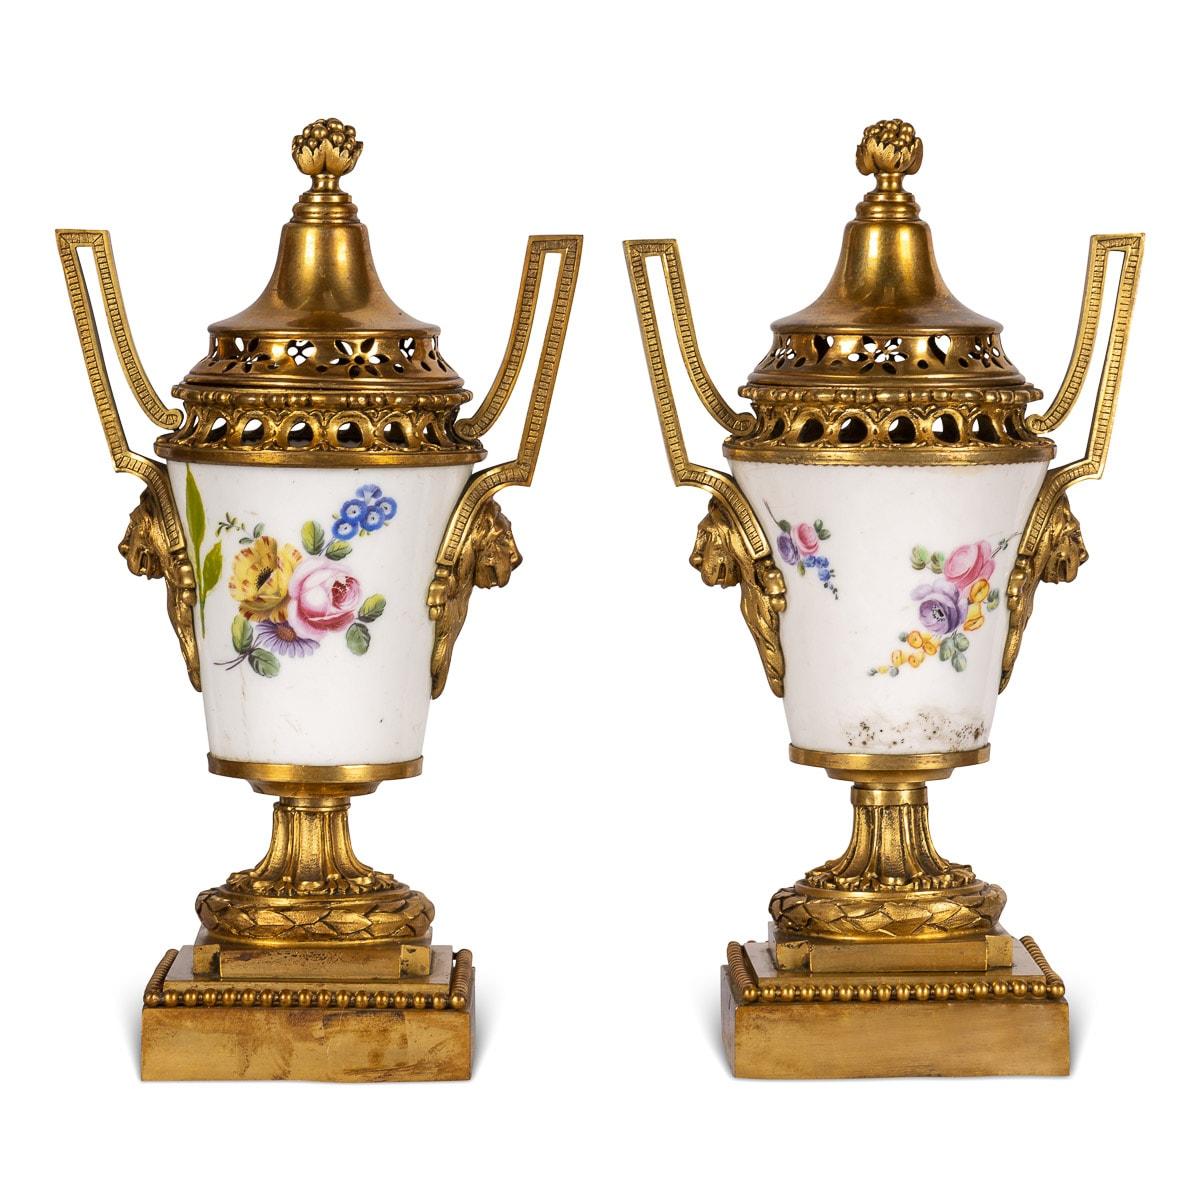 Antike französische Louis-XVI-Vasen mit zwei Henkeln und Deckeln, die mit Ormolu auf Porzellan montiert sind, aus dem späten 18. Die Deckel sind durchbrochen und enden mit einem Tannenzapfen, der Korpus ist mit aufrechten Henkeln versehen, die in